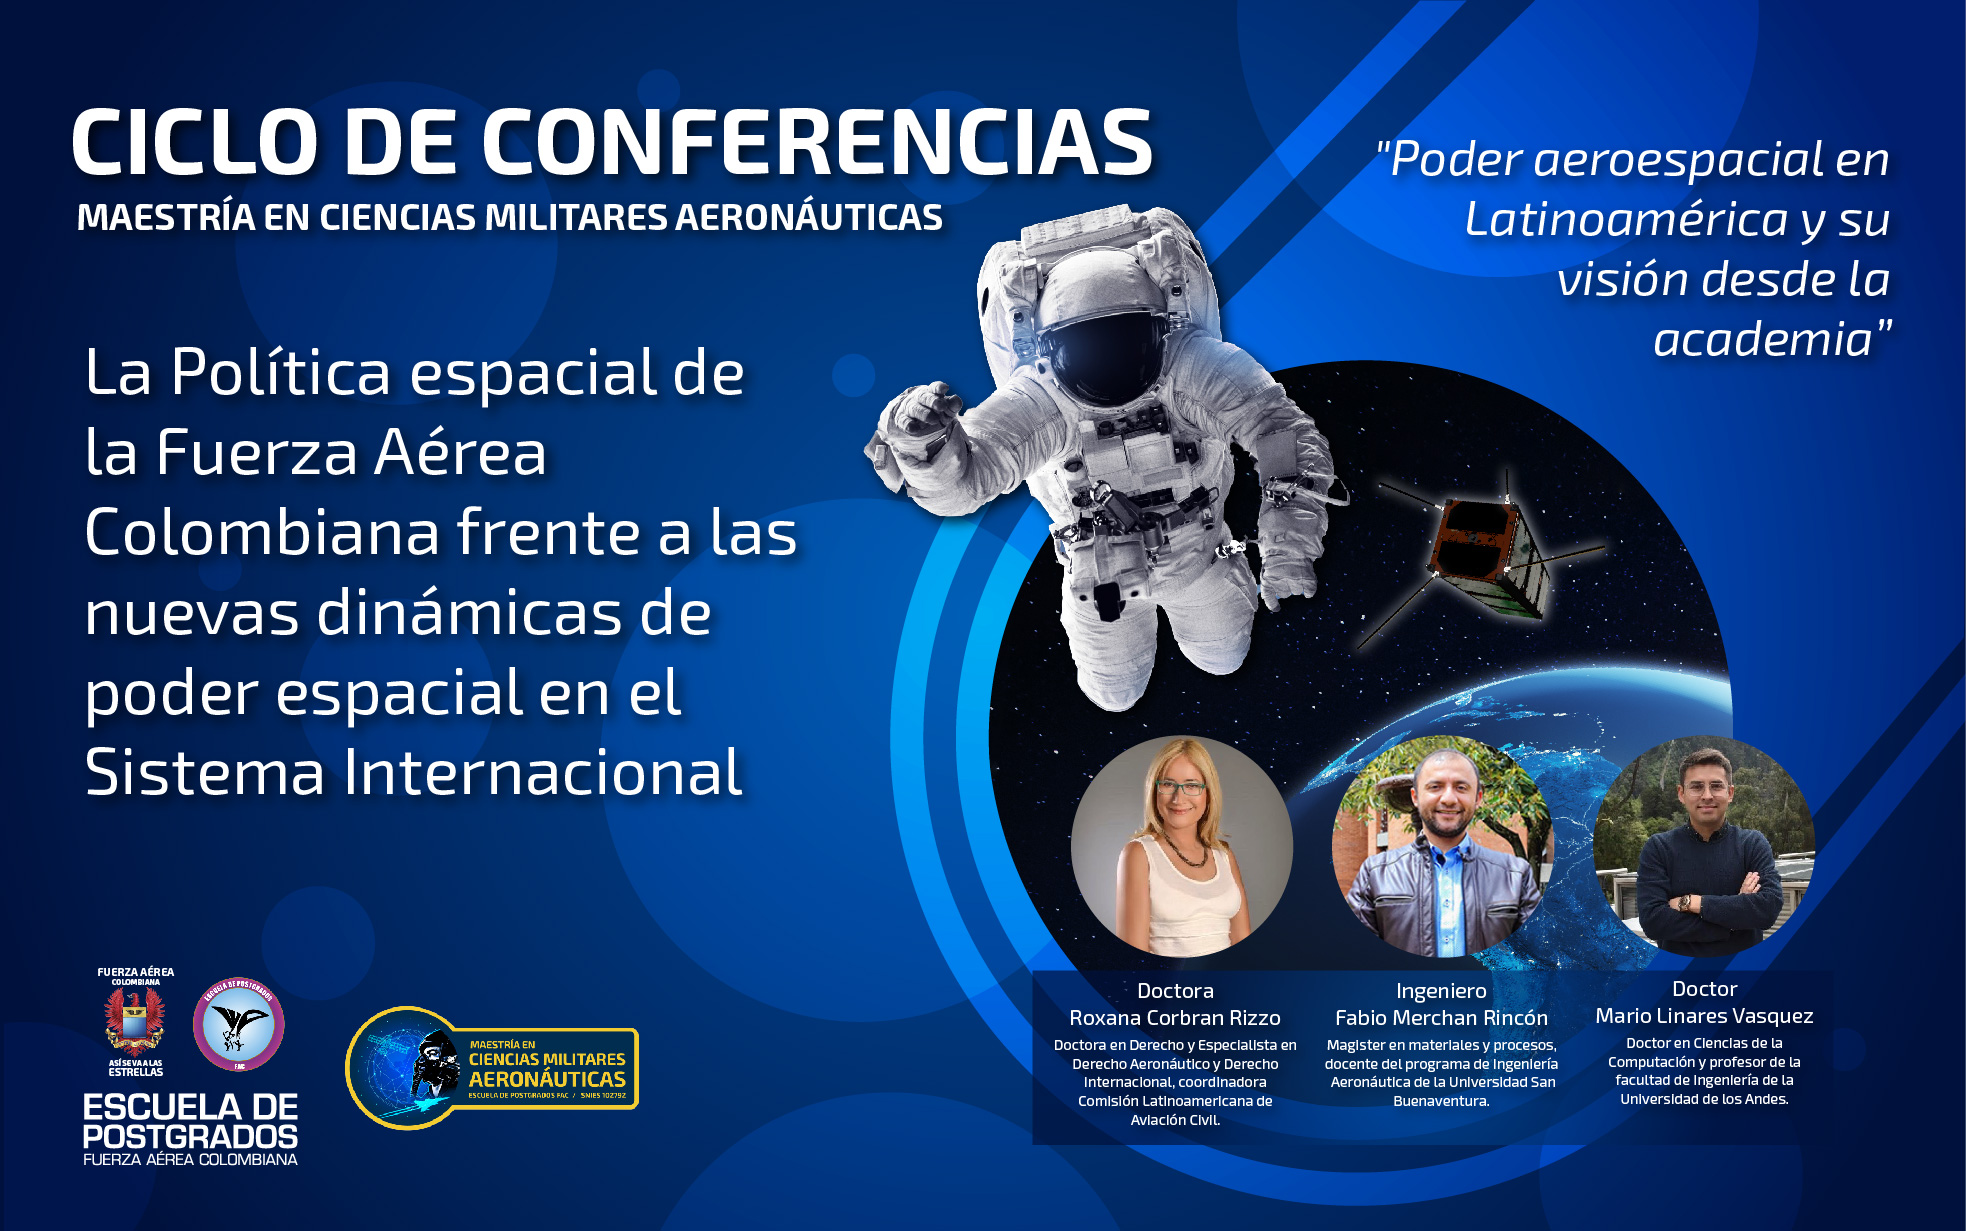 Ciclo de Conferencias analizando el Poder Aéreo Espacial en Latinoamérica fue liderado por la Escuela de Postgrados